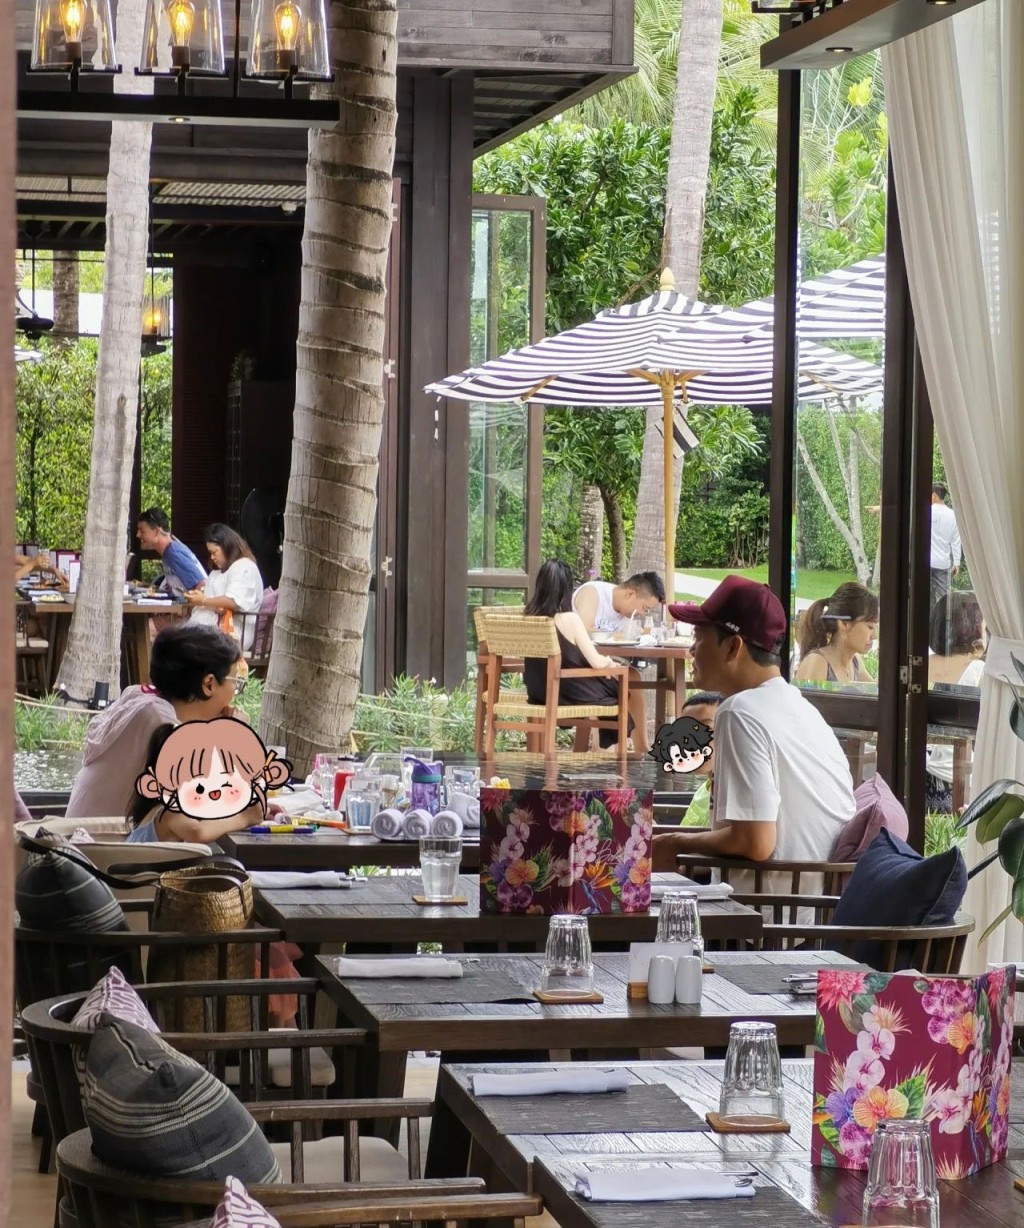 其实当时谢天华正与太太Tina及一对子女在酒店半开放式餐厅用膳。